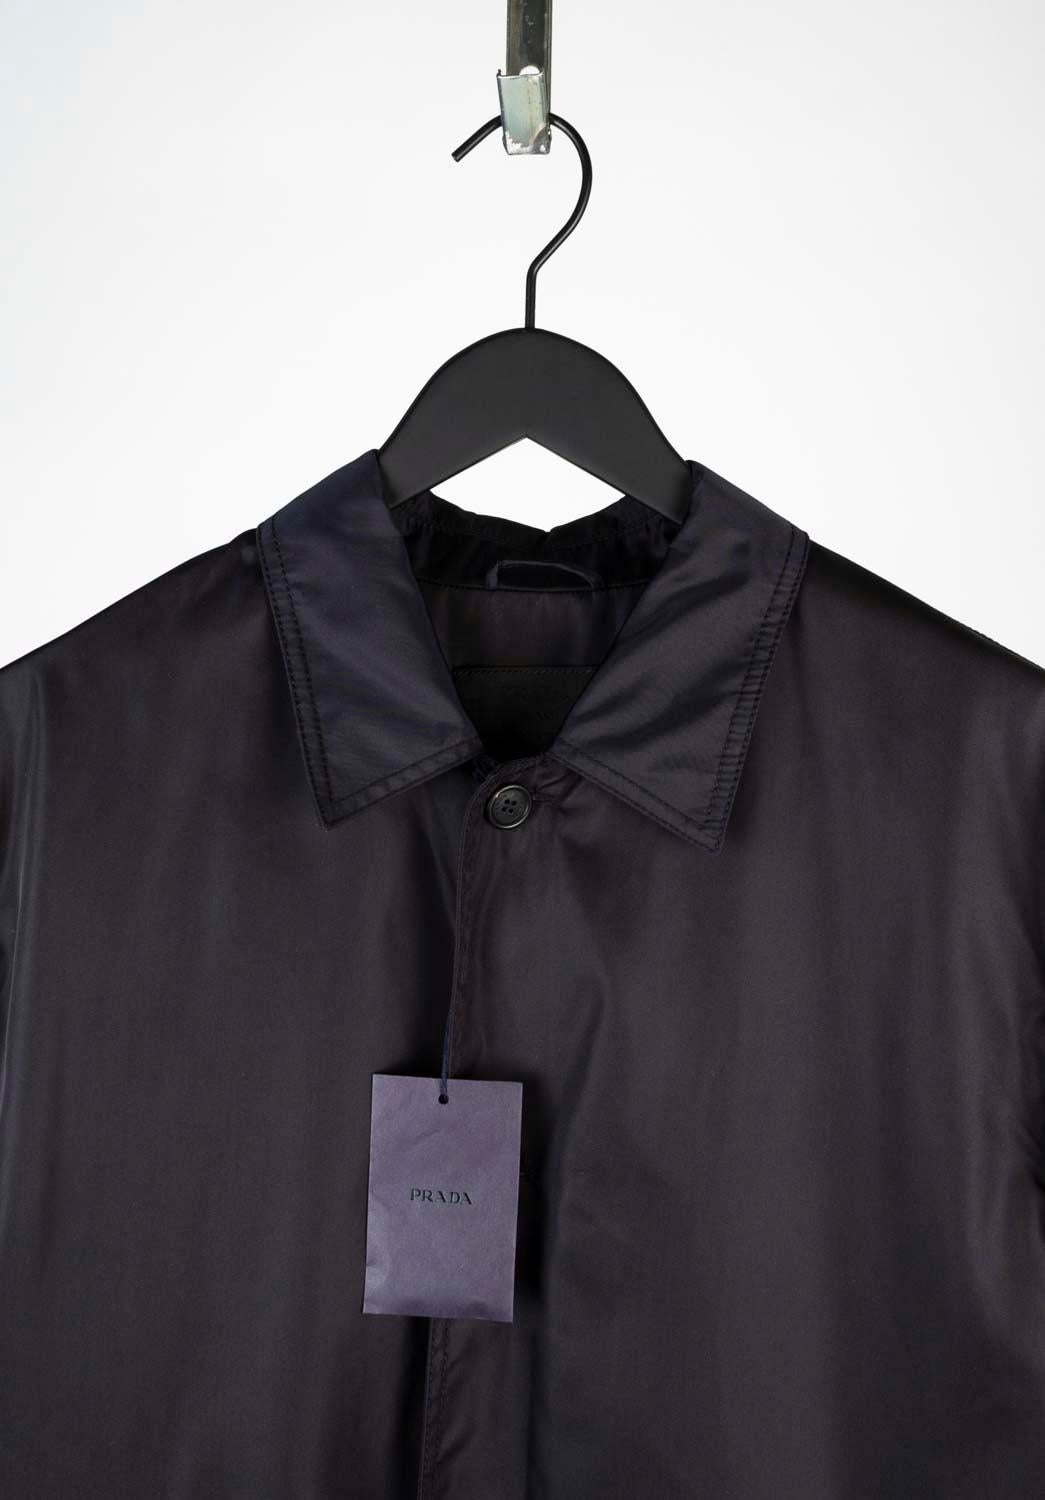 100% authentique Nouveauté Imperméable Prada, S569
Couleur : Noir
(La couleur réelle peut varier légèrement en raison de l'interprétation individuelle de l'écran de l'ordinateur).
Matière : 100% nylon
Taille de l'étiquette : XL
Cette veste est un